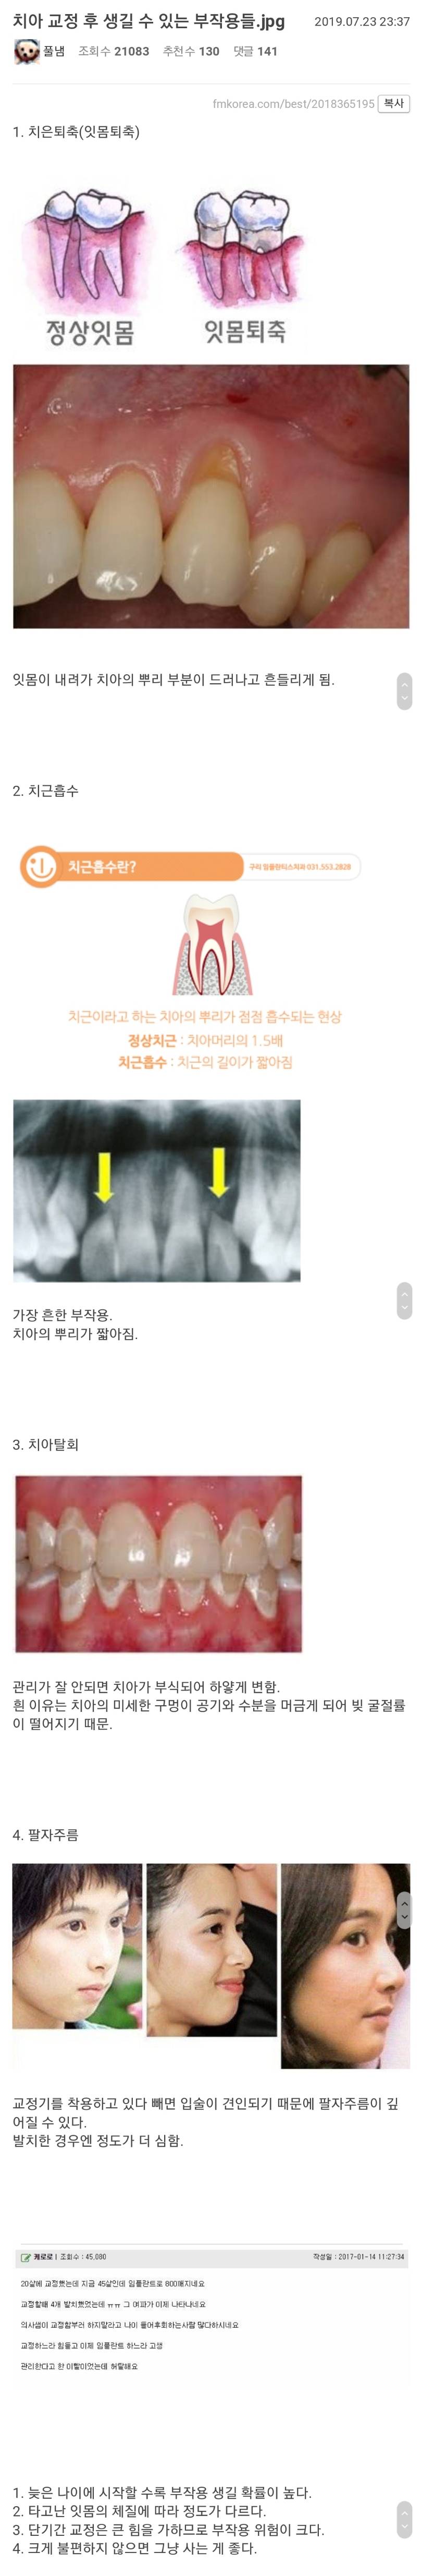 치아 교정 후 생길 수 있는 부작용들 | 인스티즈